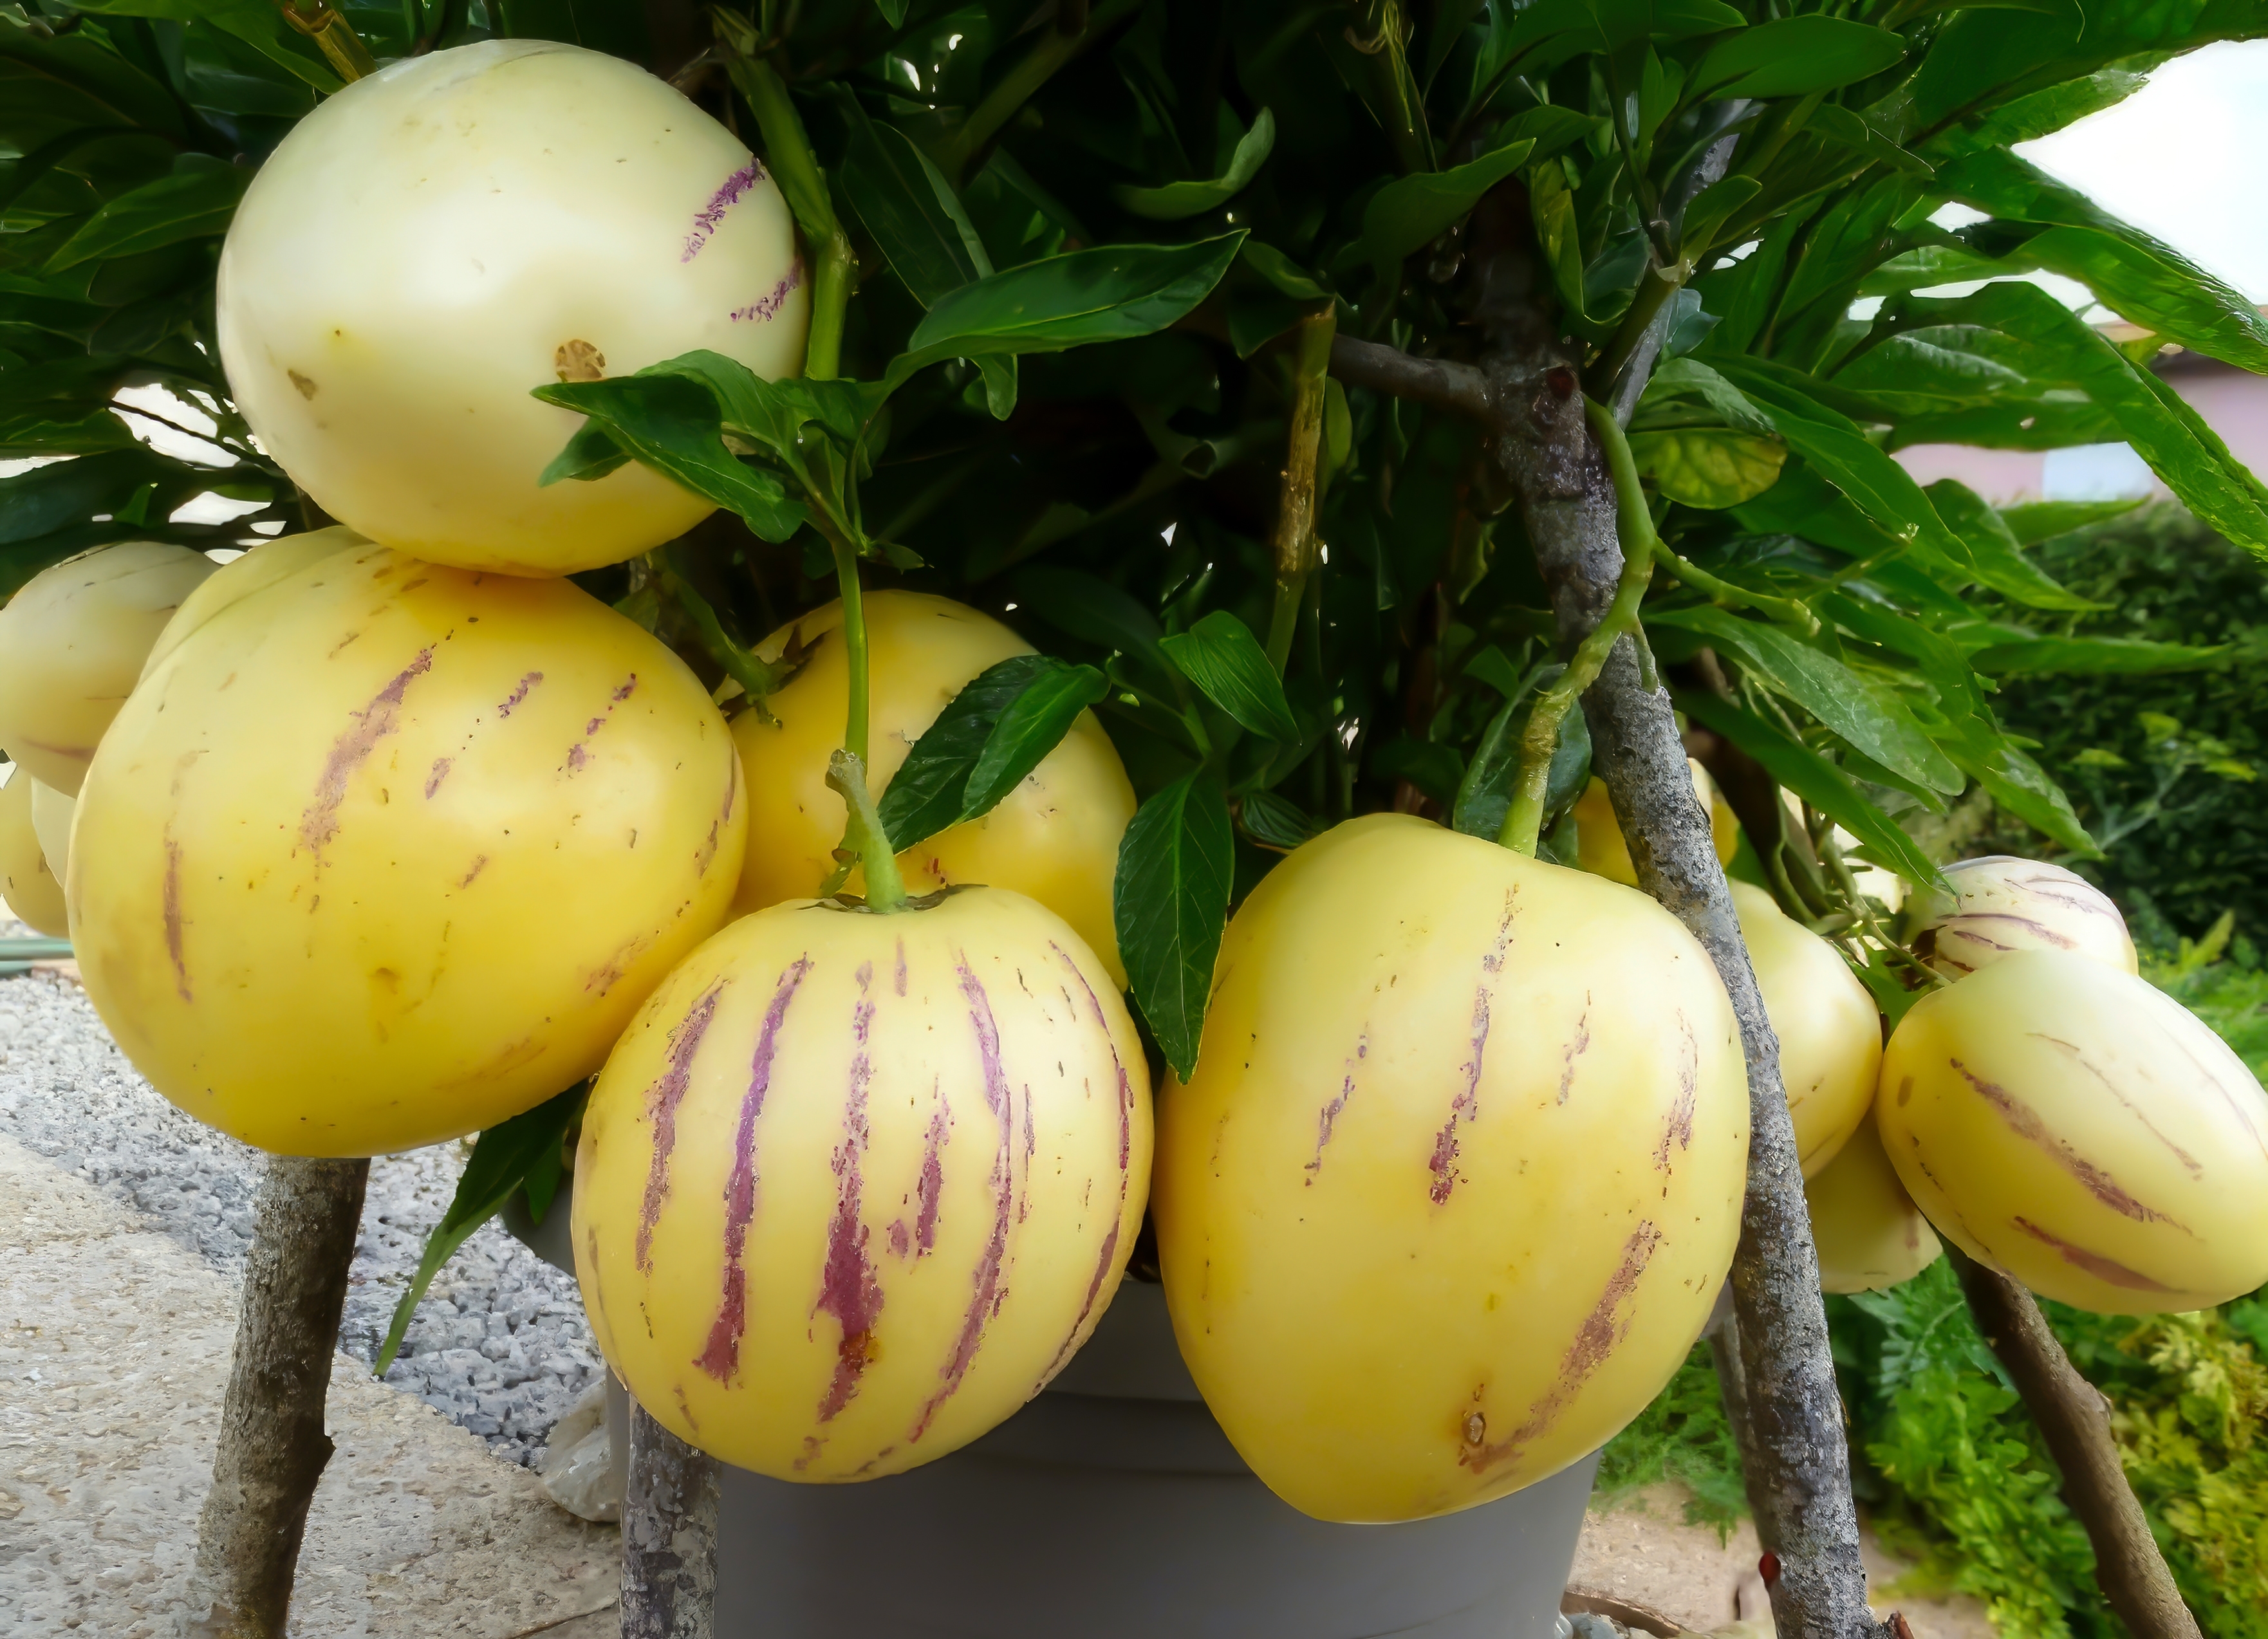 La poire-melon, ou pépino, produit d’étonnants fruits ovoïdes, dont la pulpe juteuse surprend par sa saveur sucrée. Copyright (c) 2023 Thao Lan/Shutterstock.